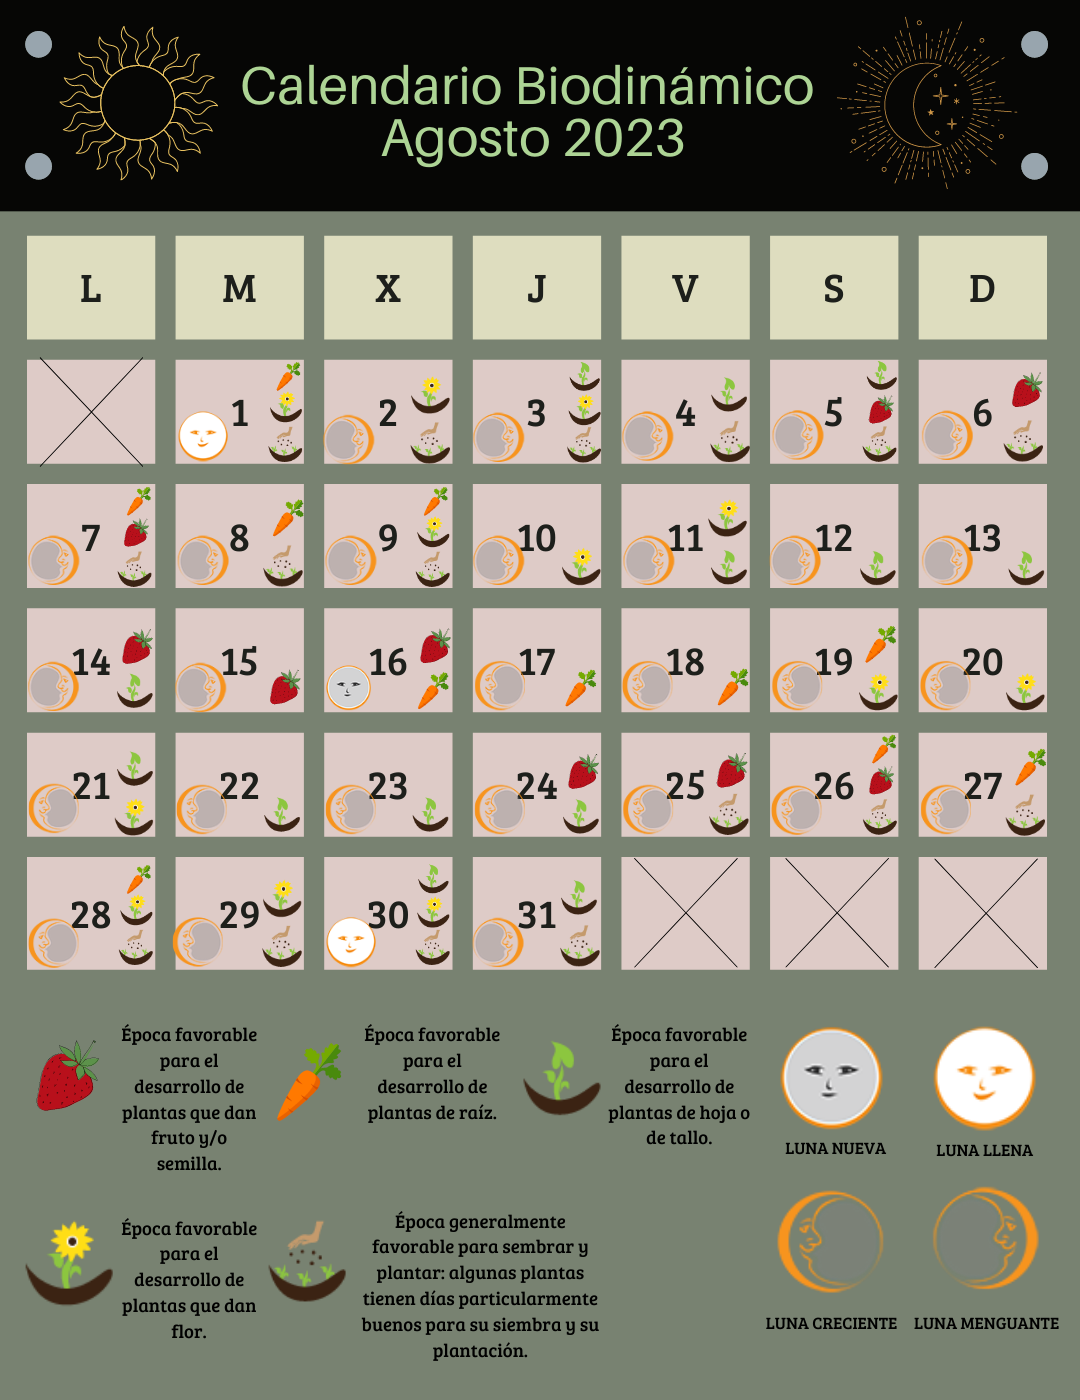 Calendario lunar biodinámico